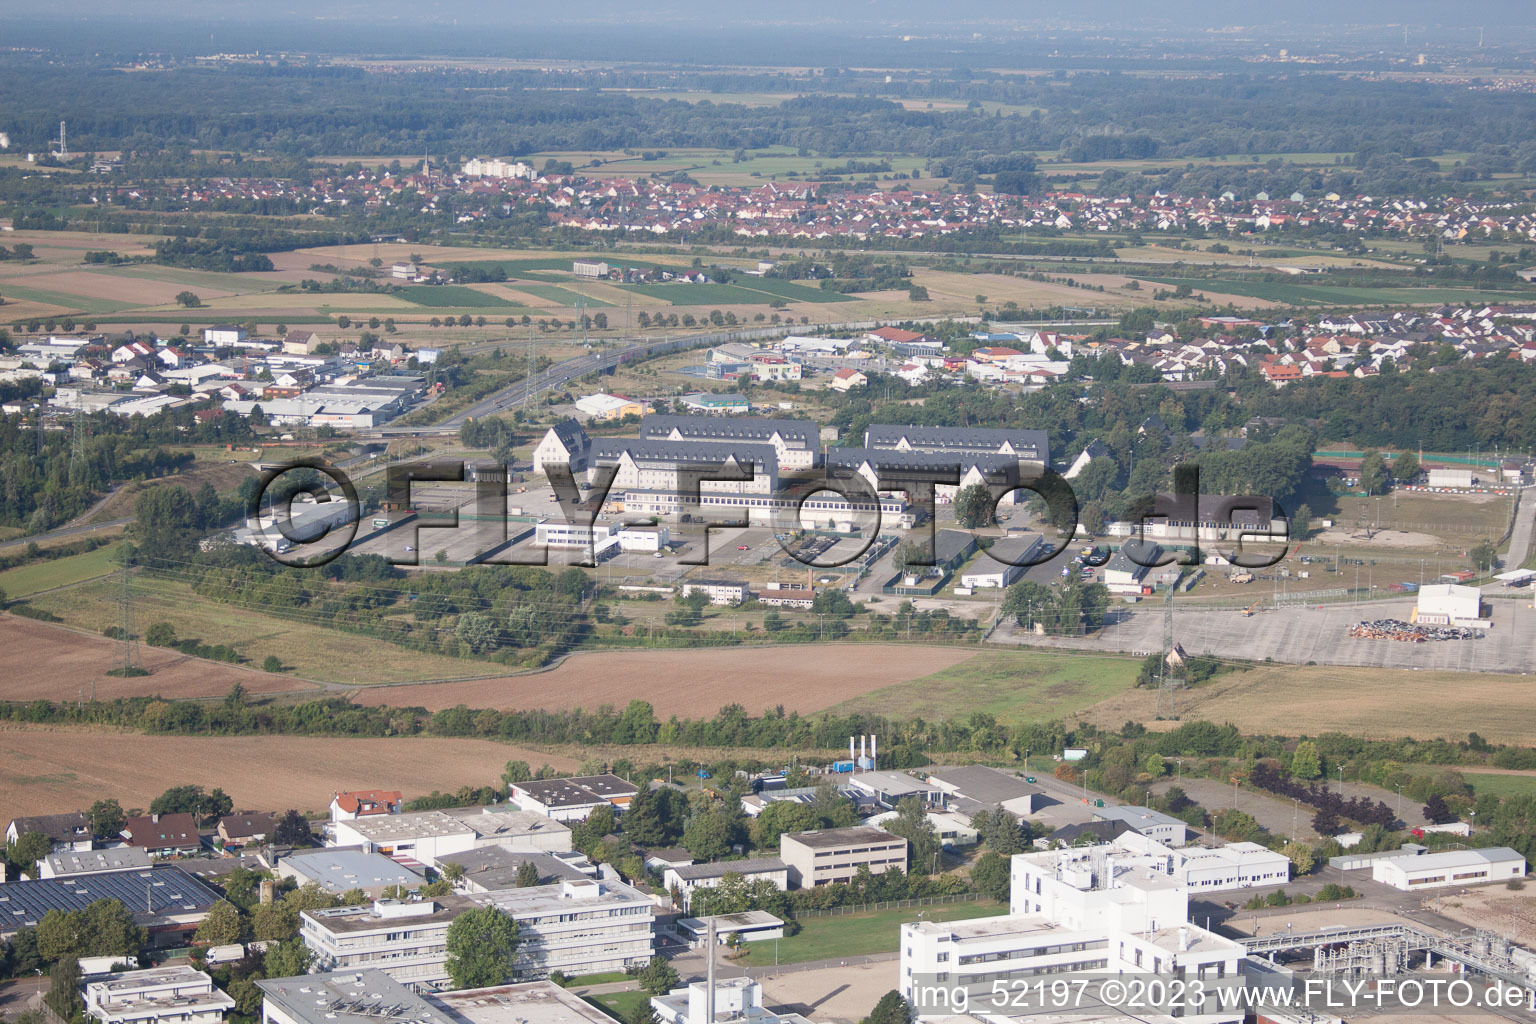 Photographie aérienne de Plankstadt dans le département Bade-Wurtemberg, Allemagne